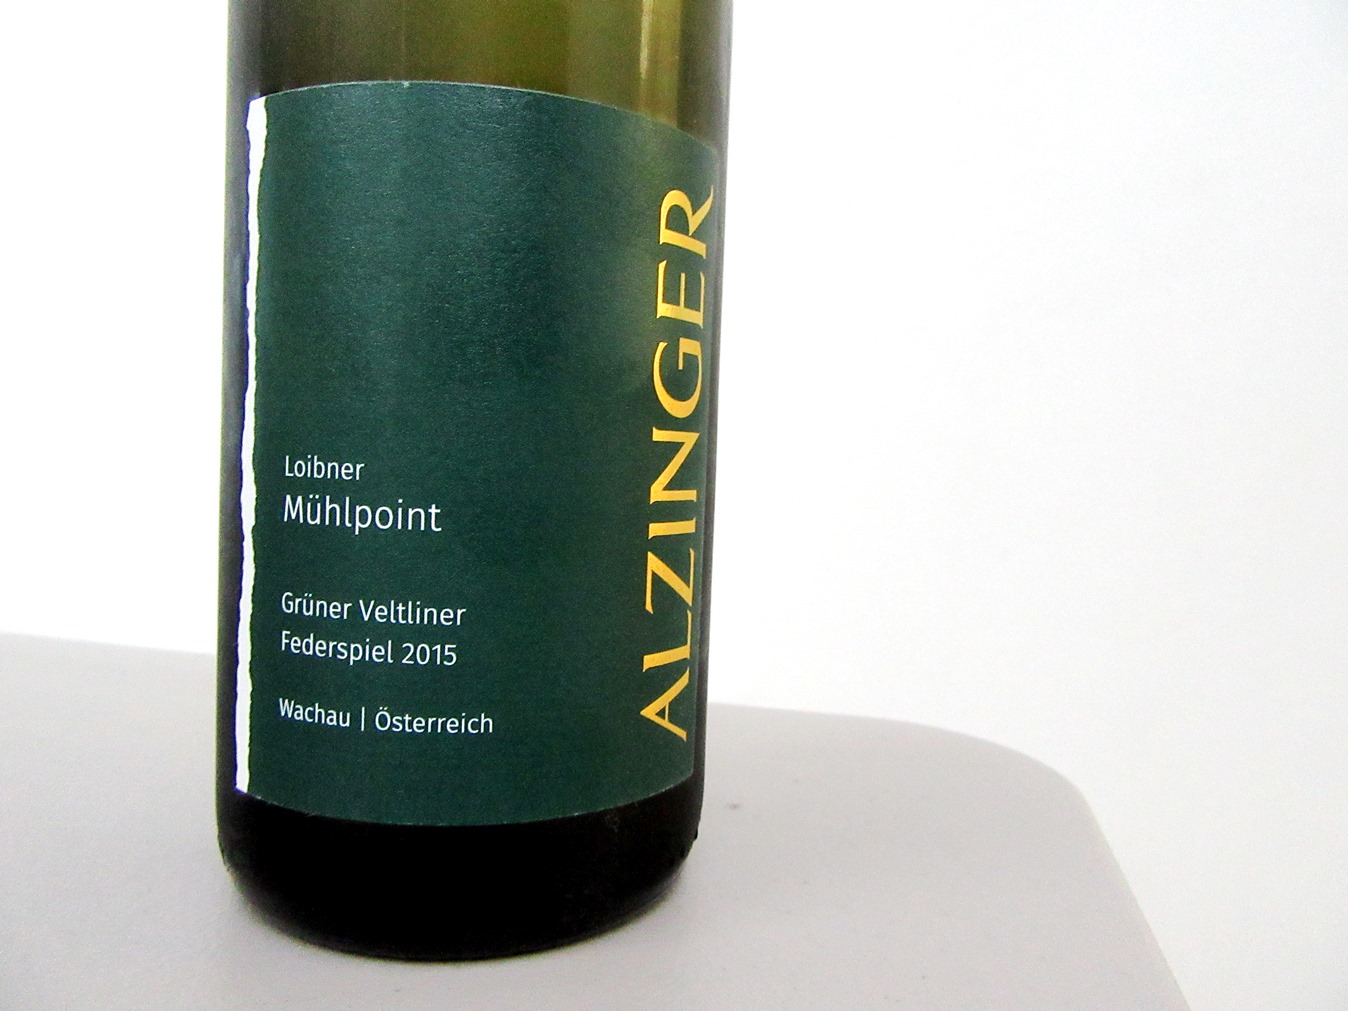 Weingut Alzinger, Loibner Mühlpoint Federspiel Grüner Veltliner 2015, Wachau, Austria, Wine Casual